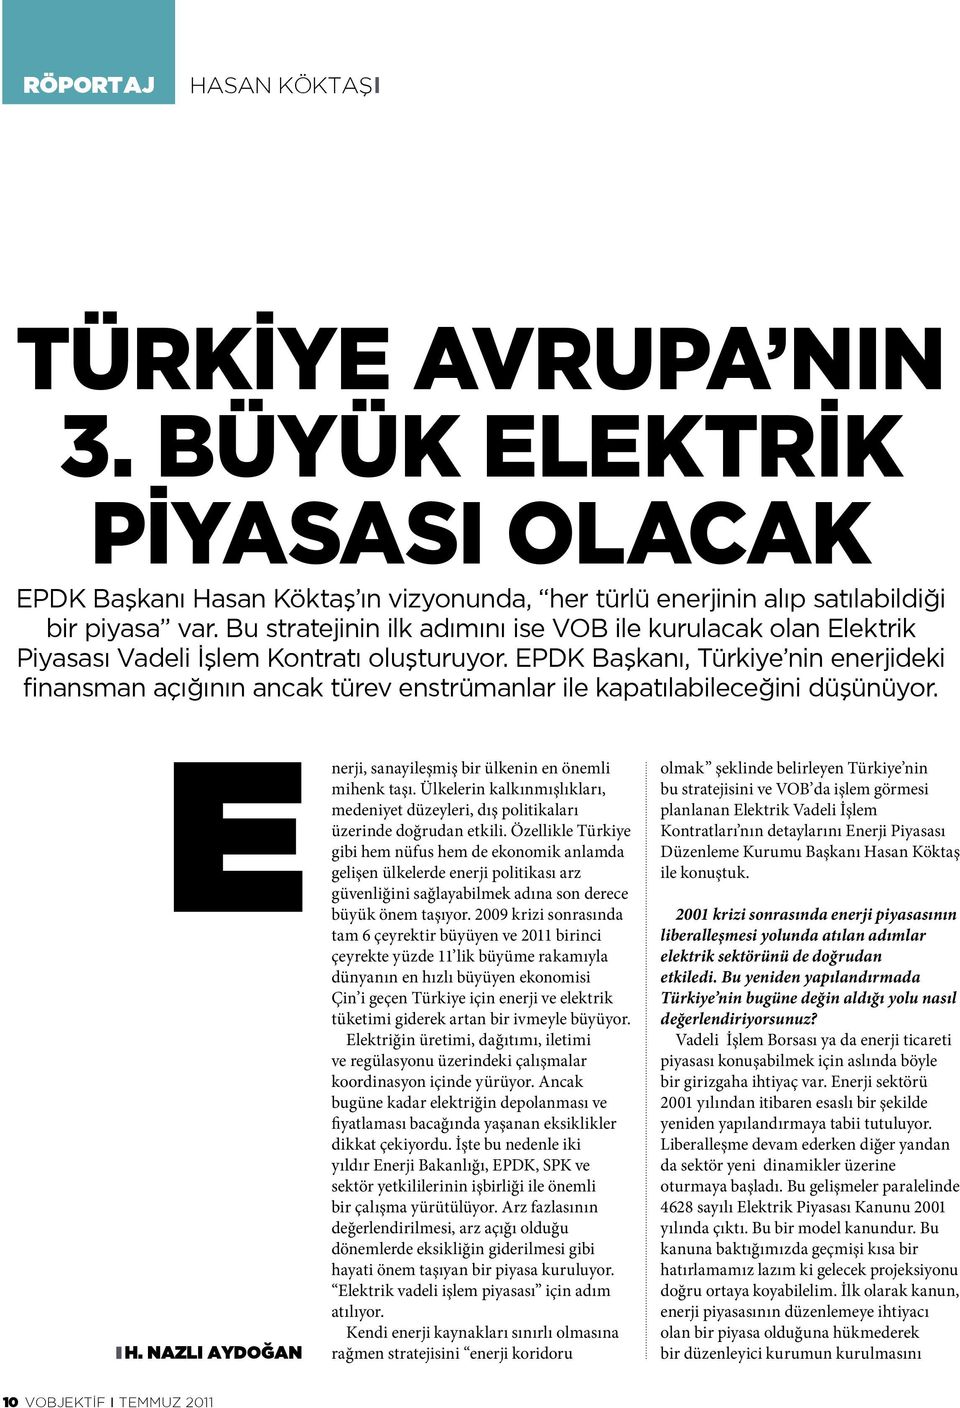 EPDK Başkanı, Türkiye nin enerjideki finansman açığının ancak türev enstrümanlar ile kapatılabileceğini düşünüyor. E H. NAZLI AYDOĞAN nerji, sanayileşmiş bir ülkenin en önemli mihenk taşı.